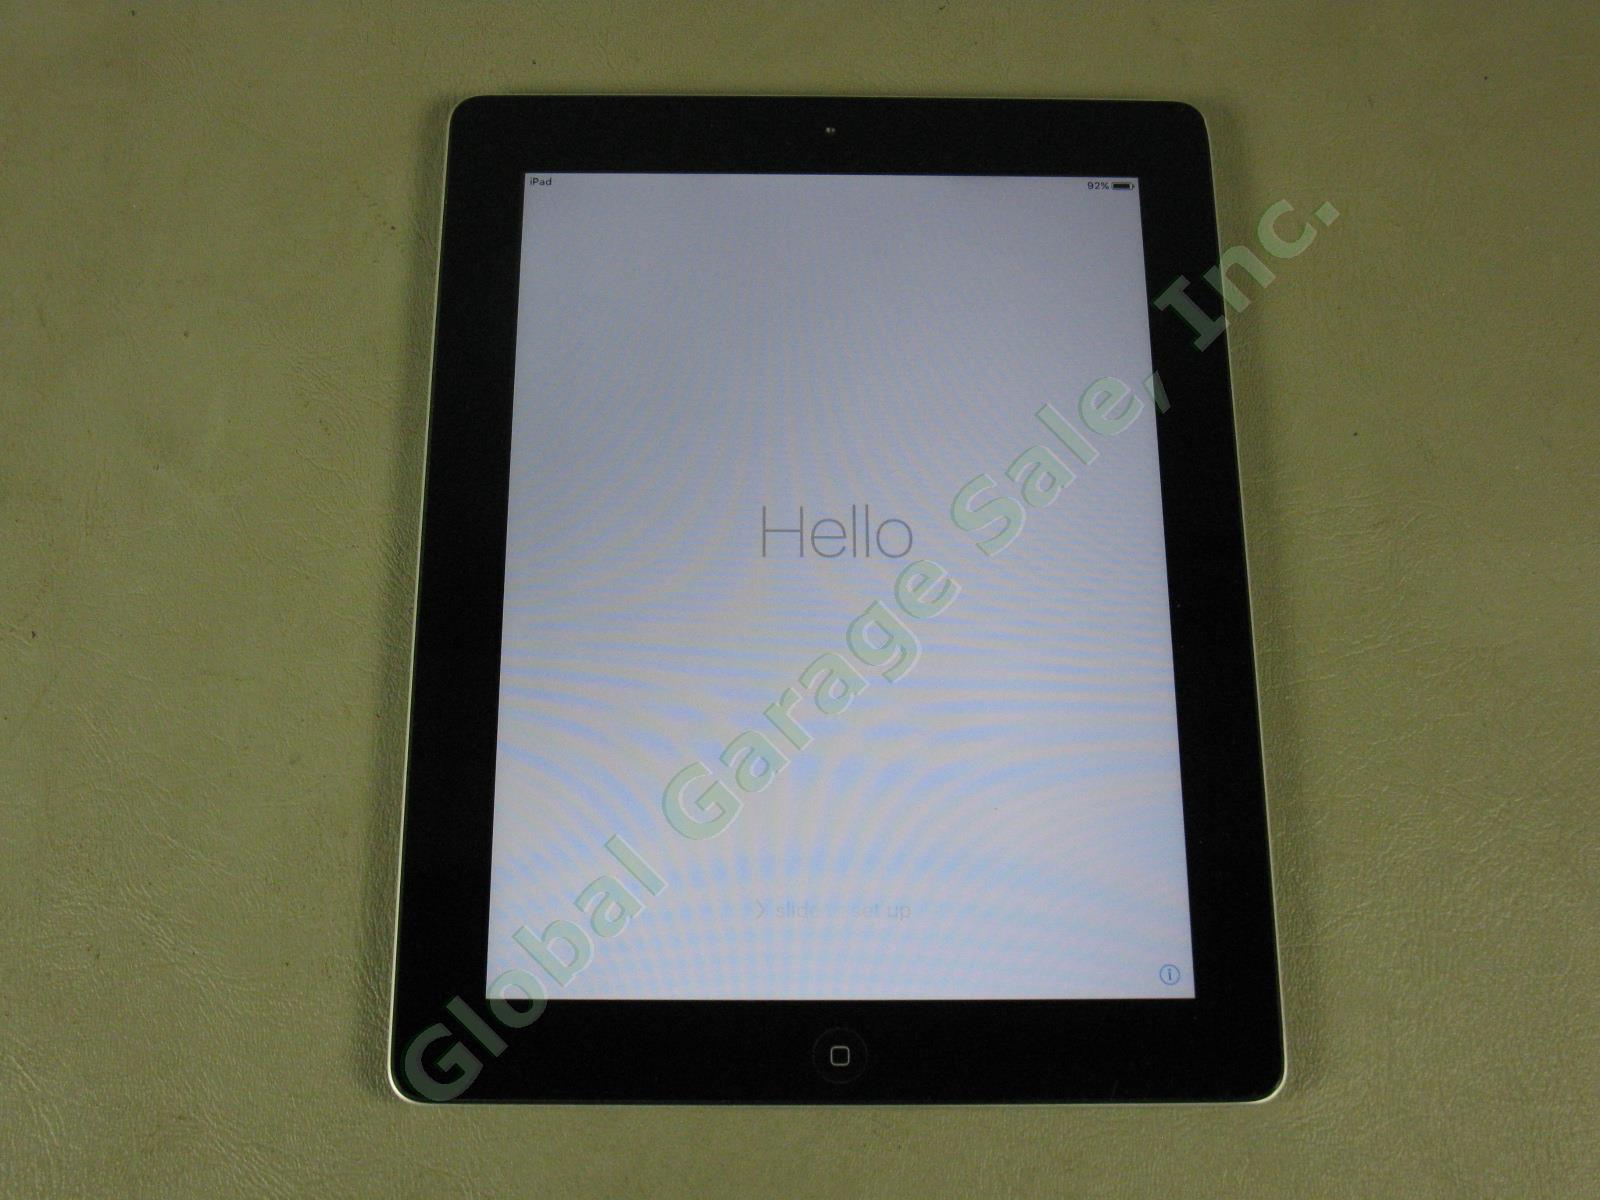 Apple iPad 2 Wifi 16GB Black Tablet Factory Reset MC770LL/A A1395 No Reserve!